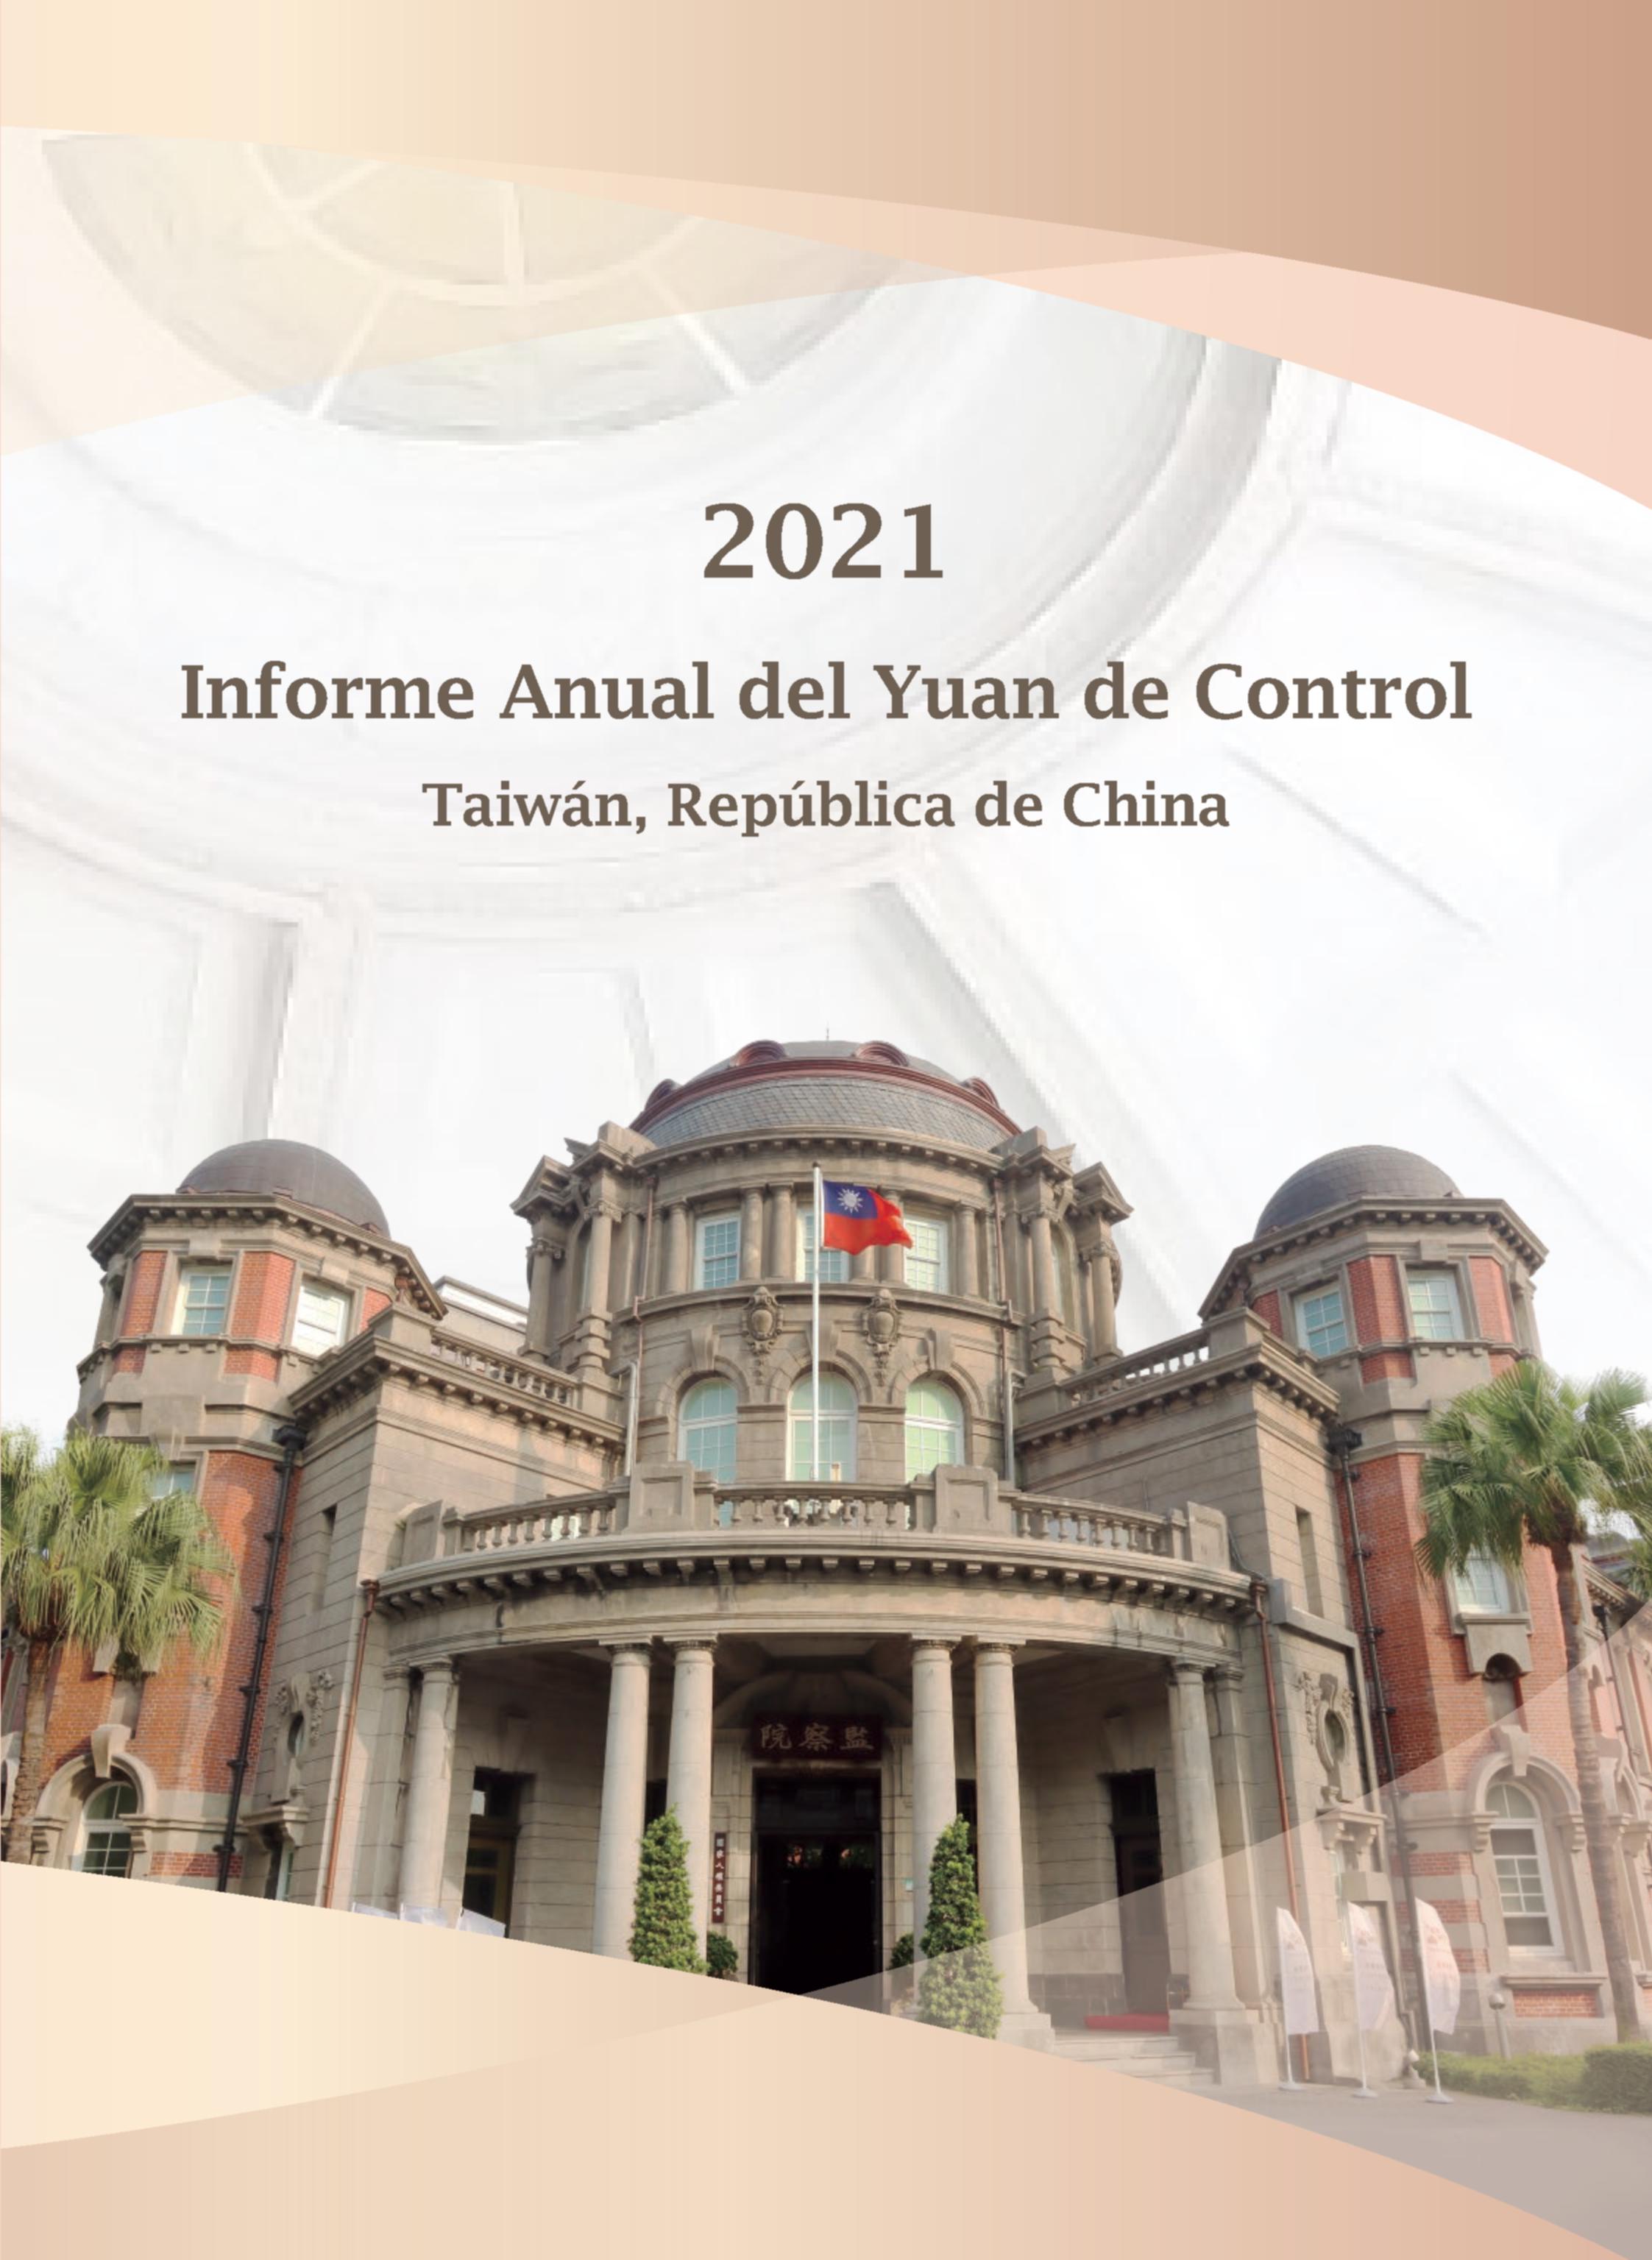  Informe Anual del Yuan de Control, 2021 